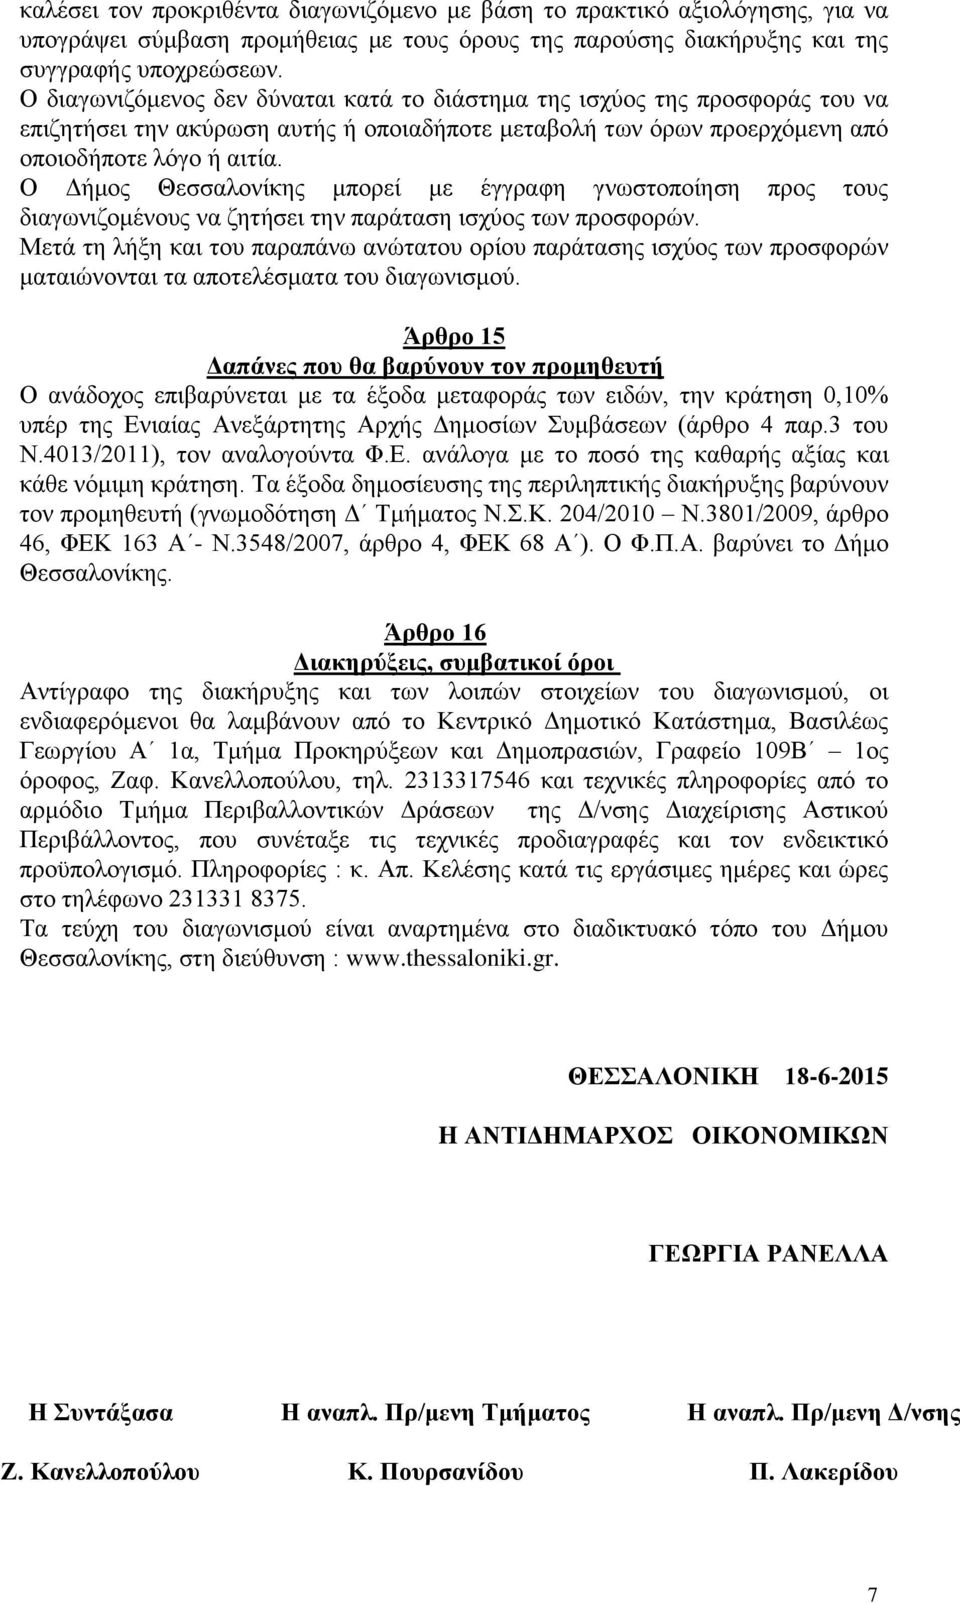 Ο Δήμος Θεσσαλονίκης μπορεί με έγγραφη γνωστοποίηση προς τους διαγωνιζομένους να ζητήσει την παράταση ισχύος των προσφορών.